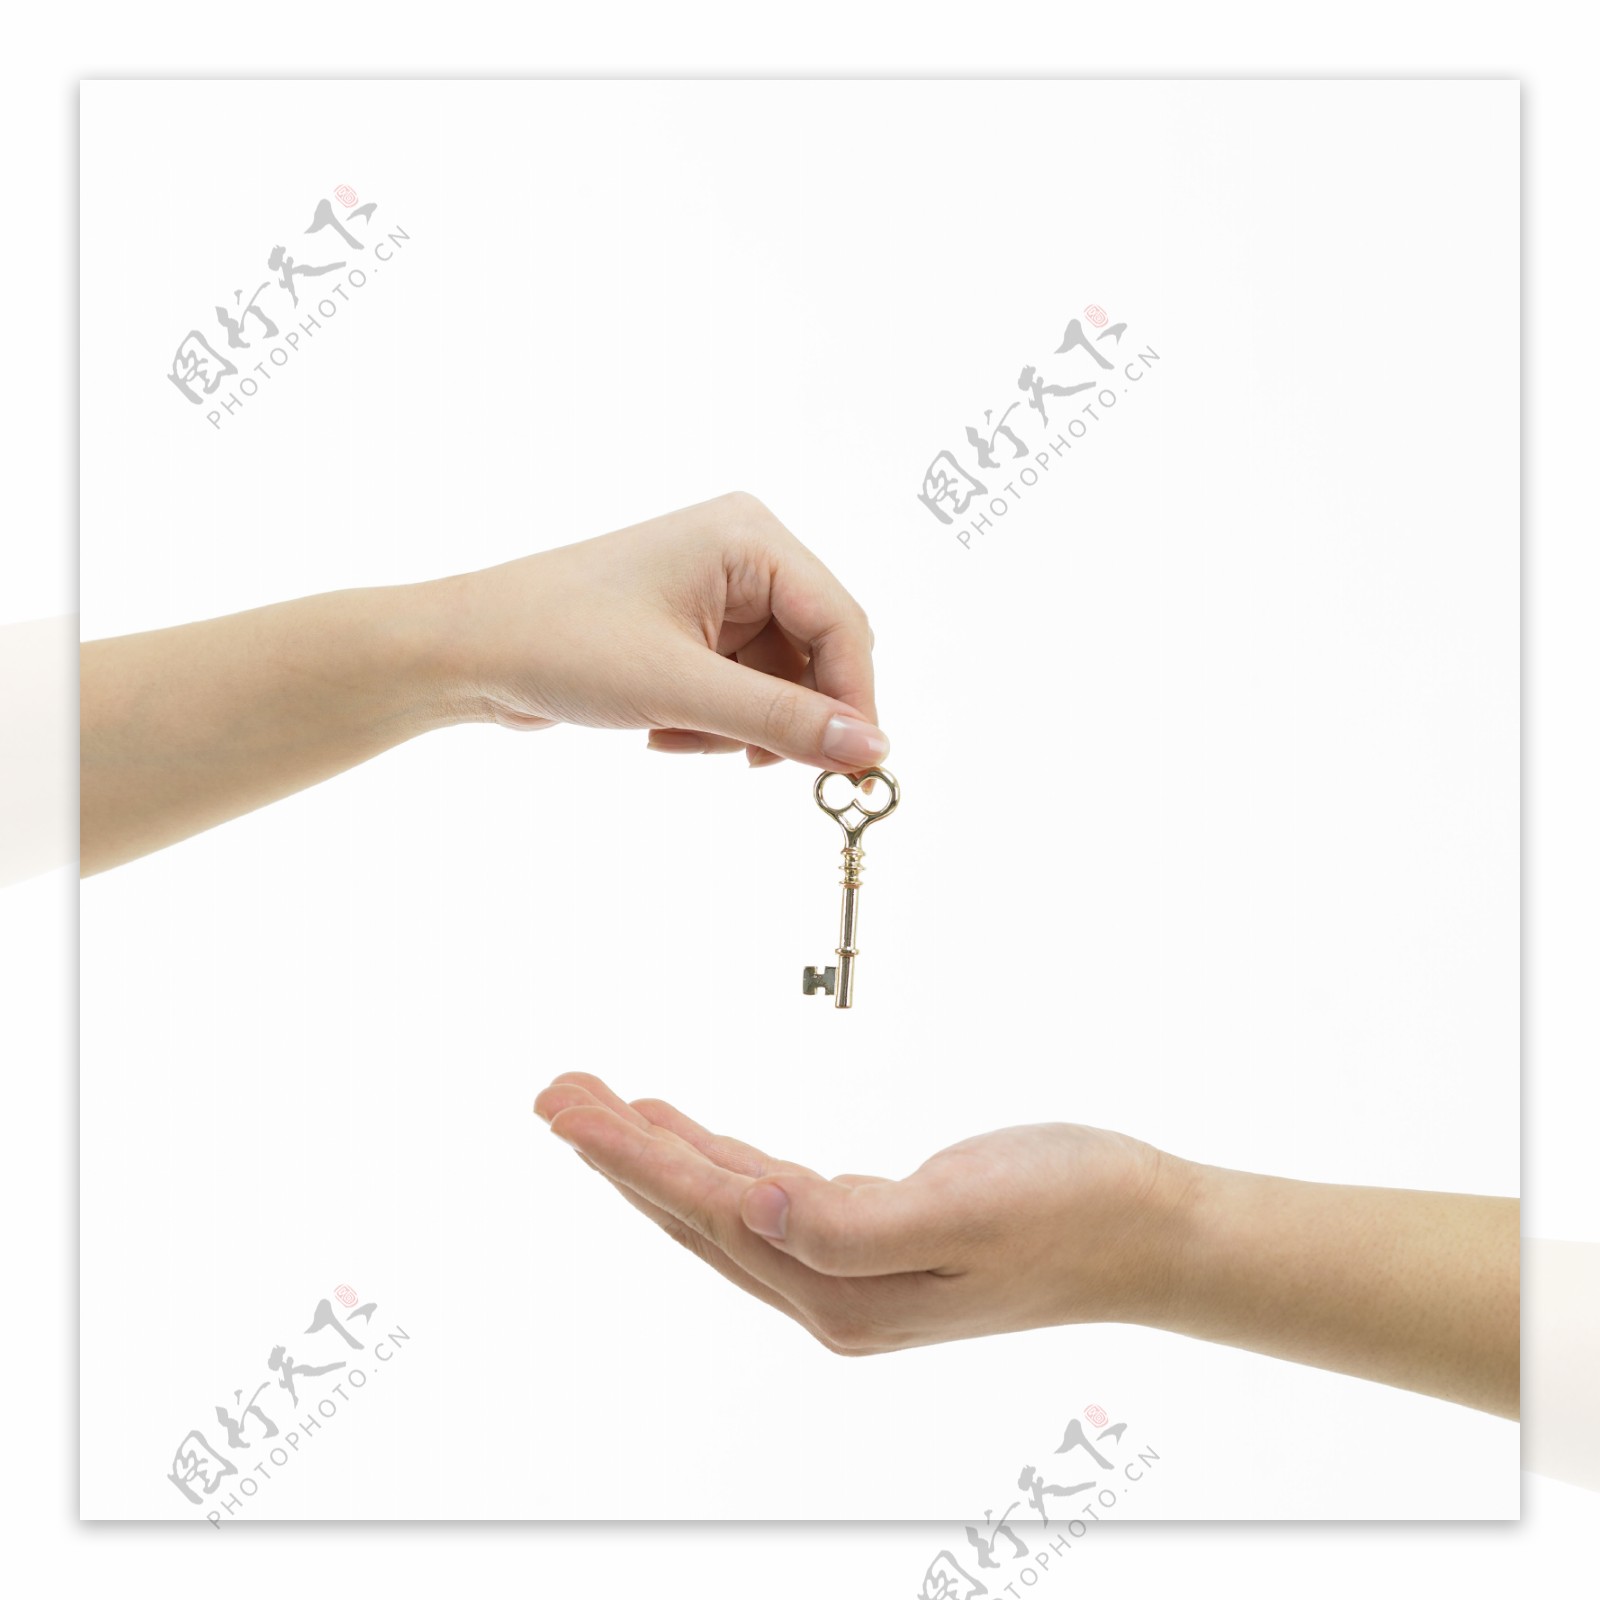 钥匙成交房子图片